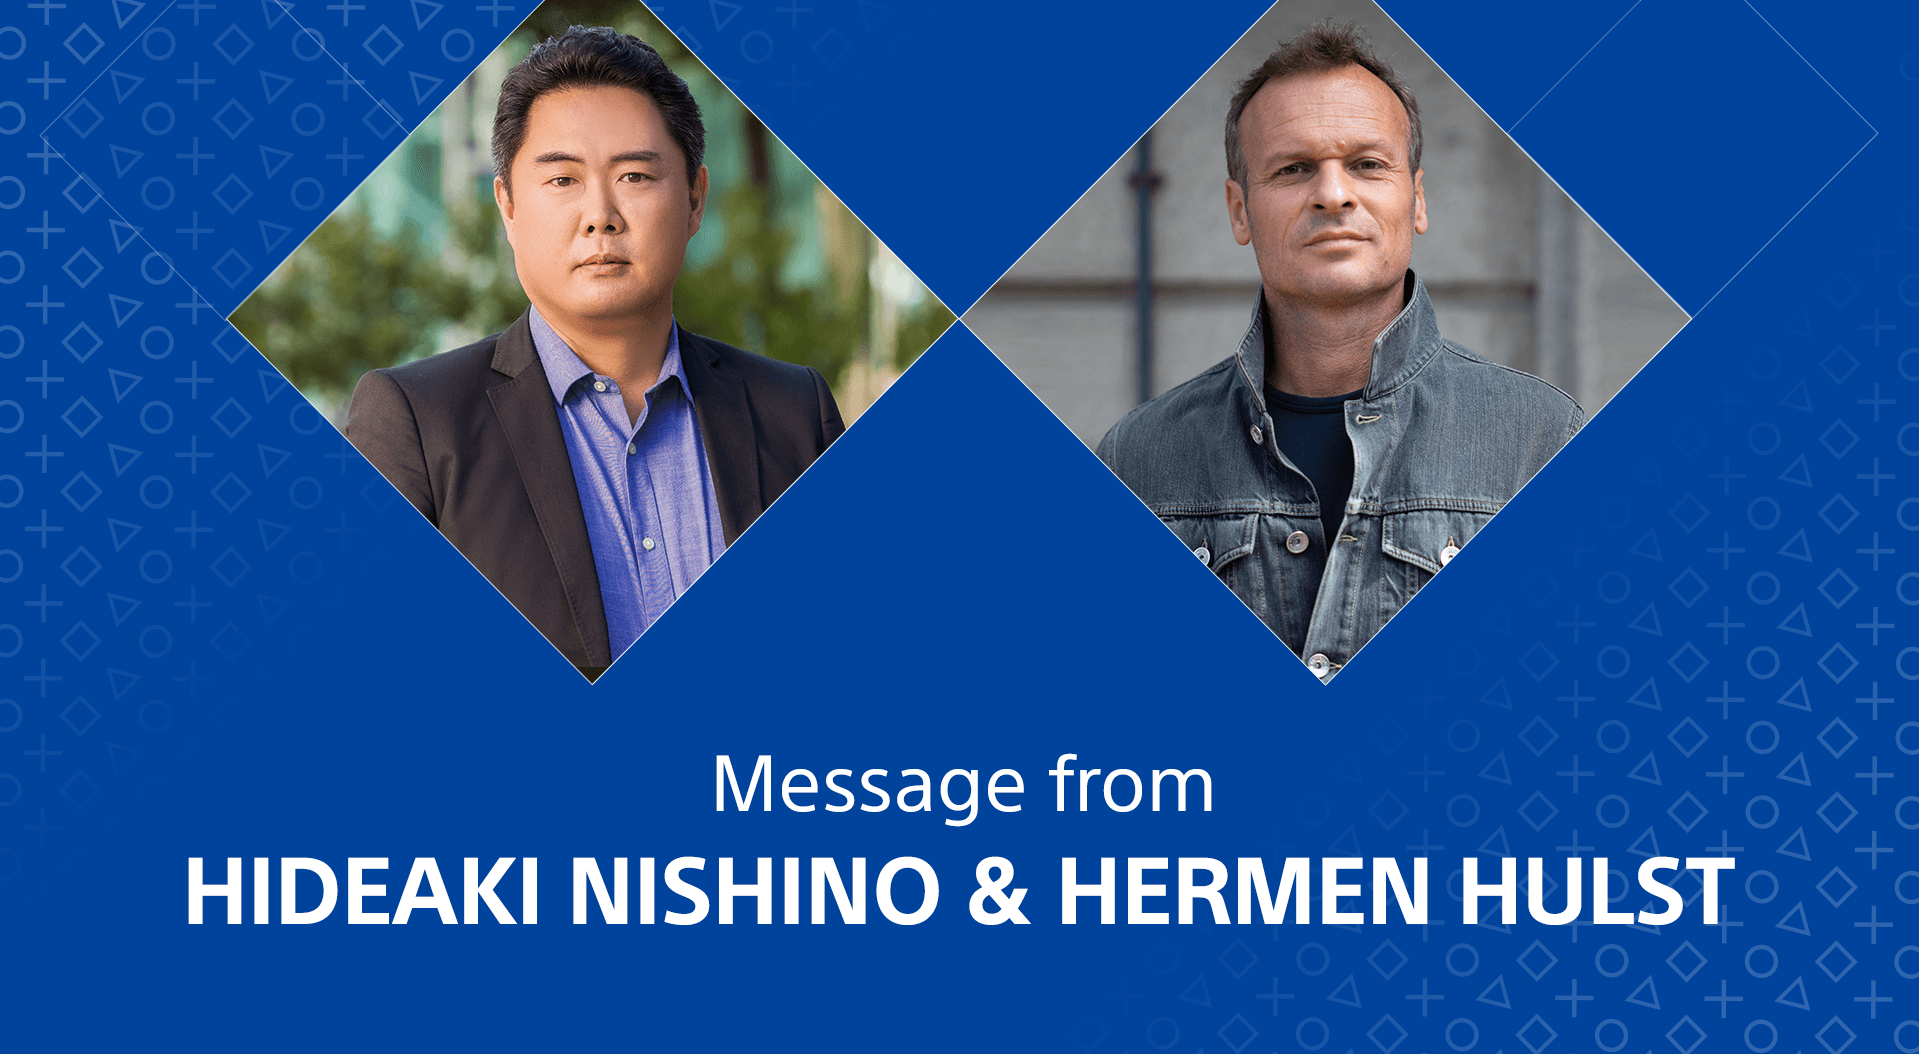 Hideaki Nishino and Hermen Hulst headshots side by side on a field of blue